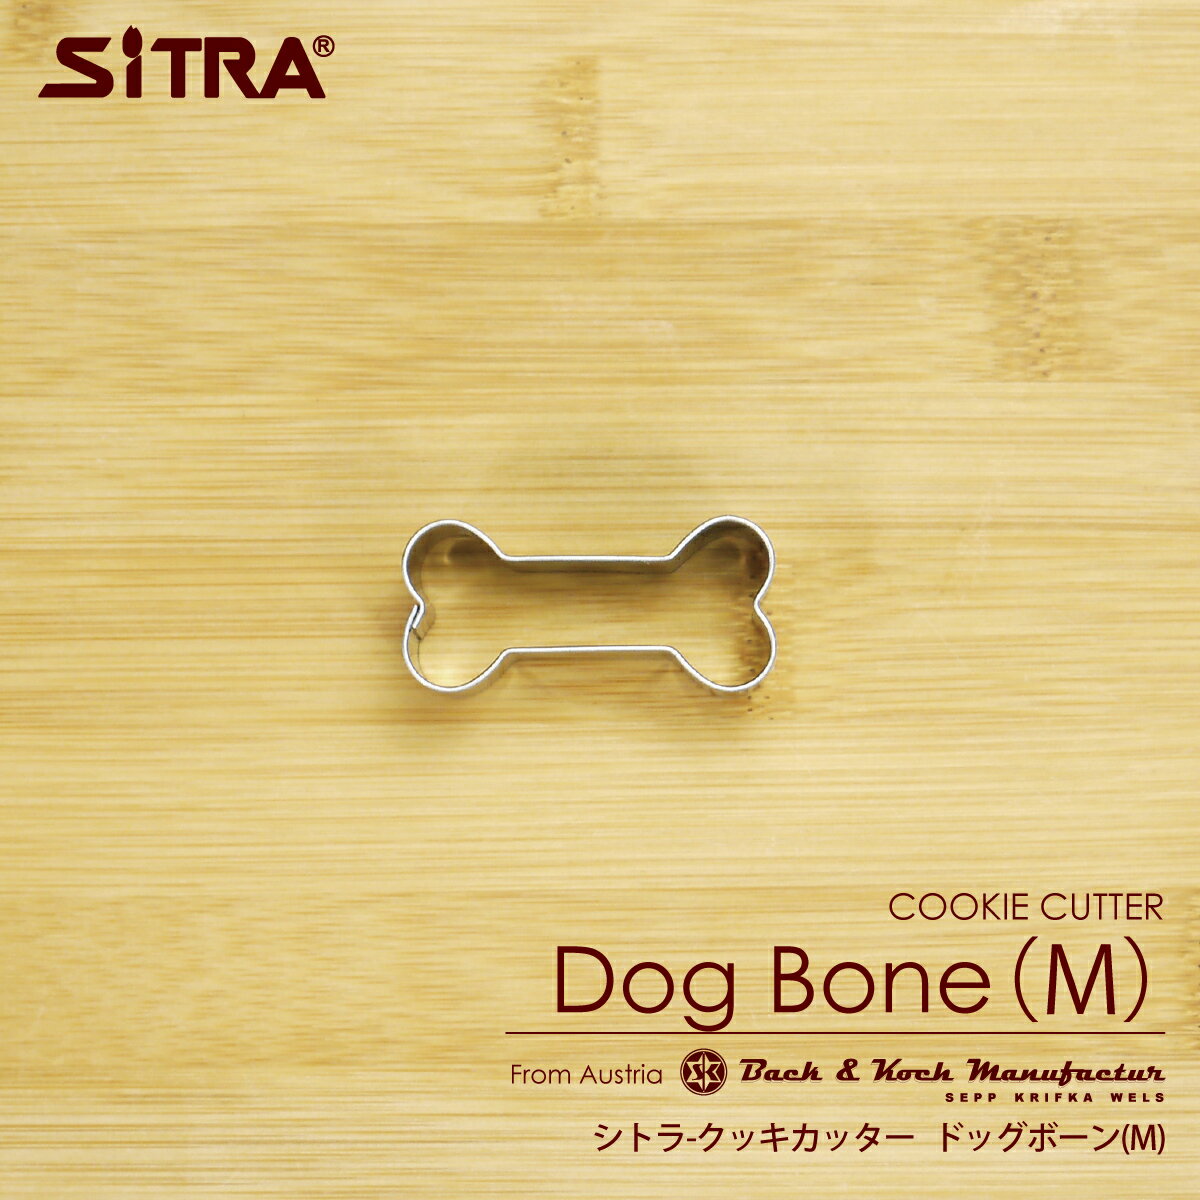 クッキー型 「ドッグボーン（M）」 犬の骨 ステンレス ヨーロッパで 人気 の おしゃれ で 珍しい 形 手作りクッキー プレゼント ギフト に 犬用クッキー型 にも人気 SiTRA シトラ 動物 犬好き さん に おすすめ の 犬グッズ